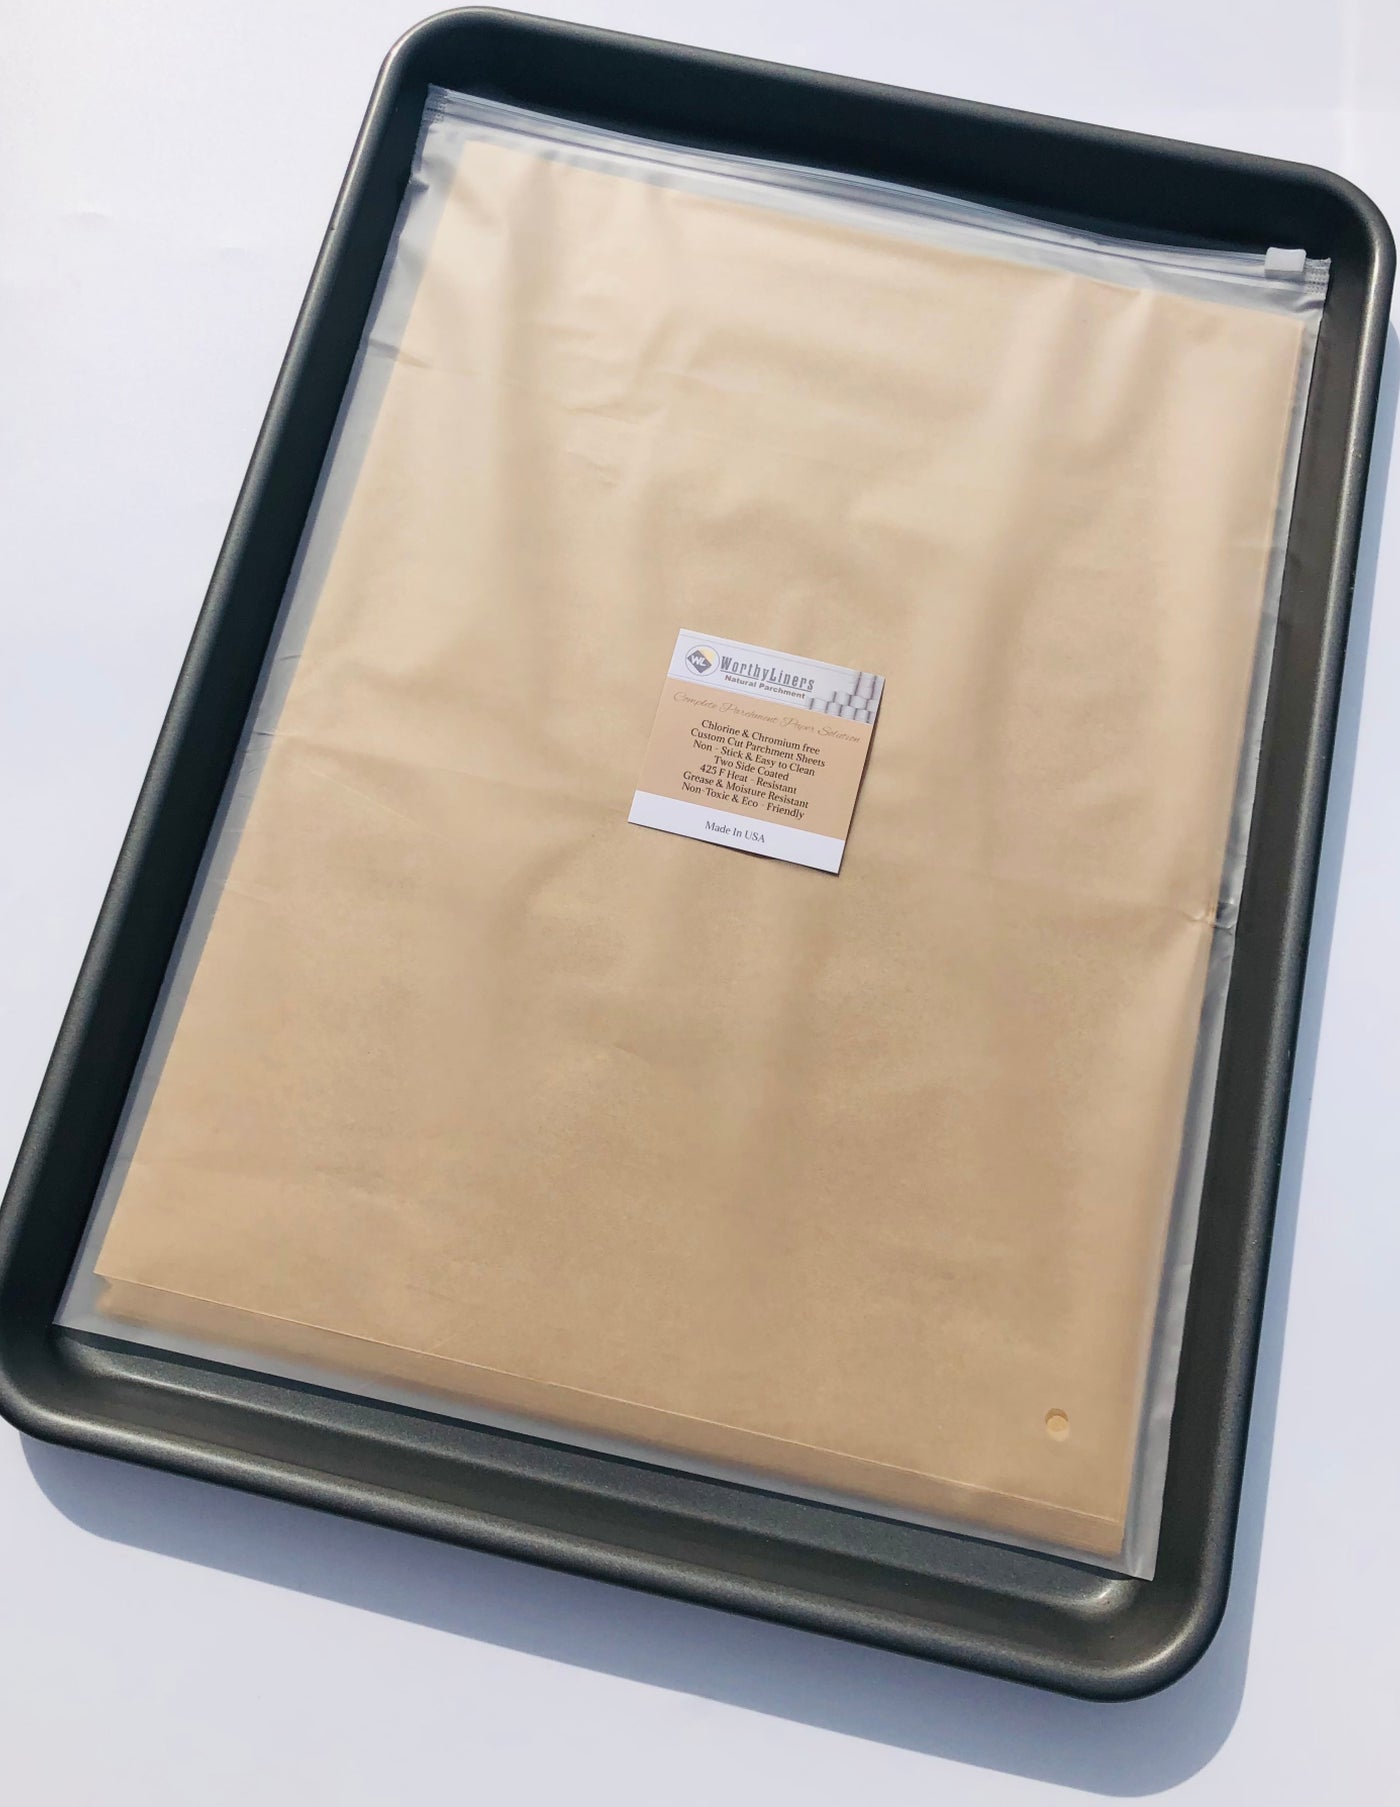 Natural Parchment Paper - 50 Sheets - Desktop Publishing Supplies, Inc.™  Brand